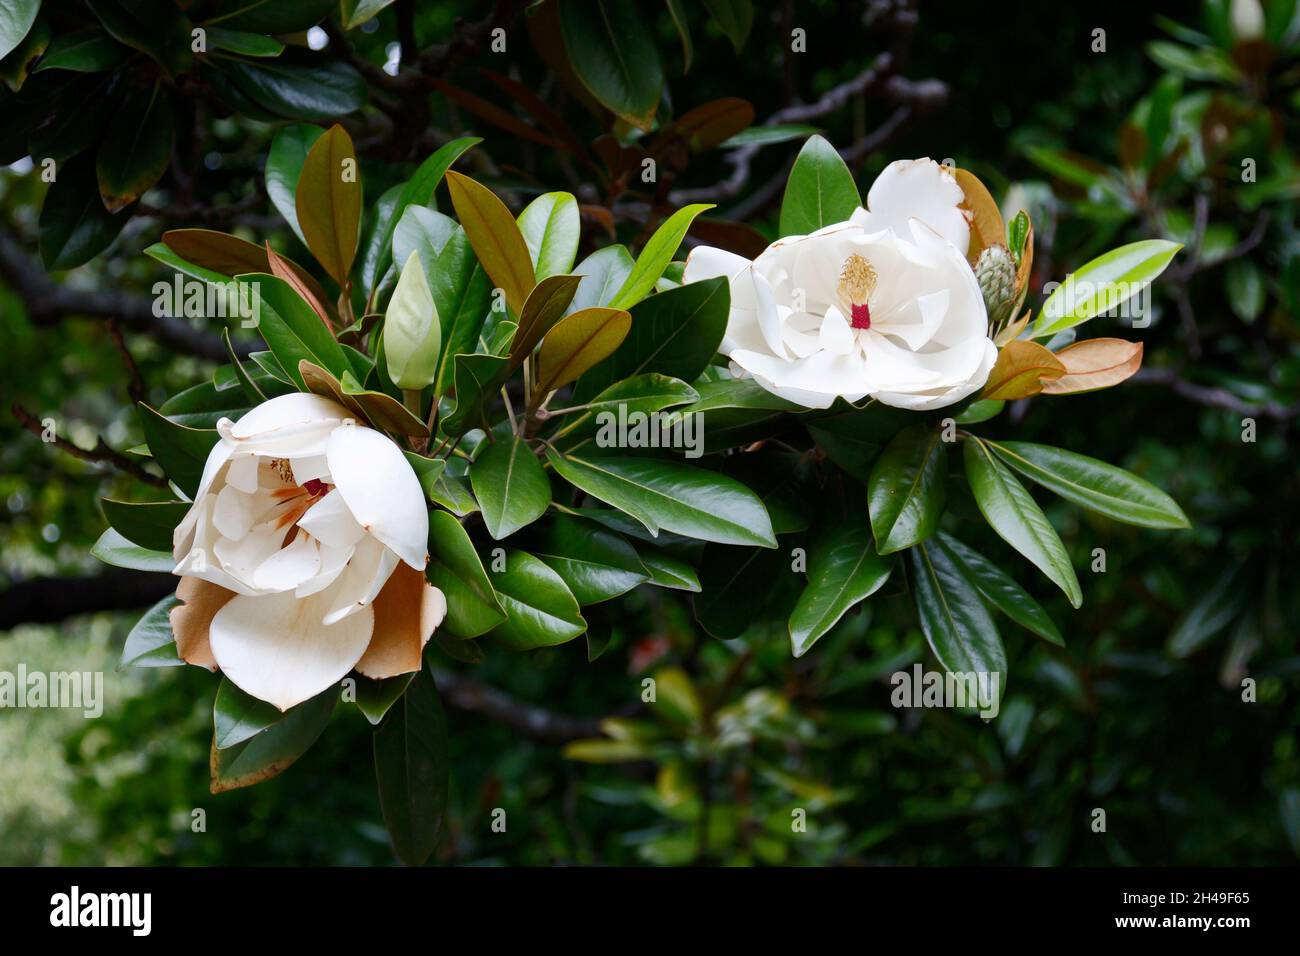 2 fleurs de magnolia, pétales blancs crémeux, gros plan, arbre, feuilles vertes brillantes,Les flancs bruns, symbolisent la longévité et la persévérance, la nature, Botanica Banque D'Images